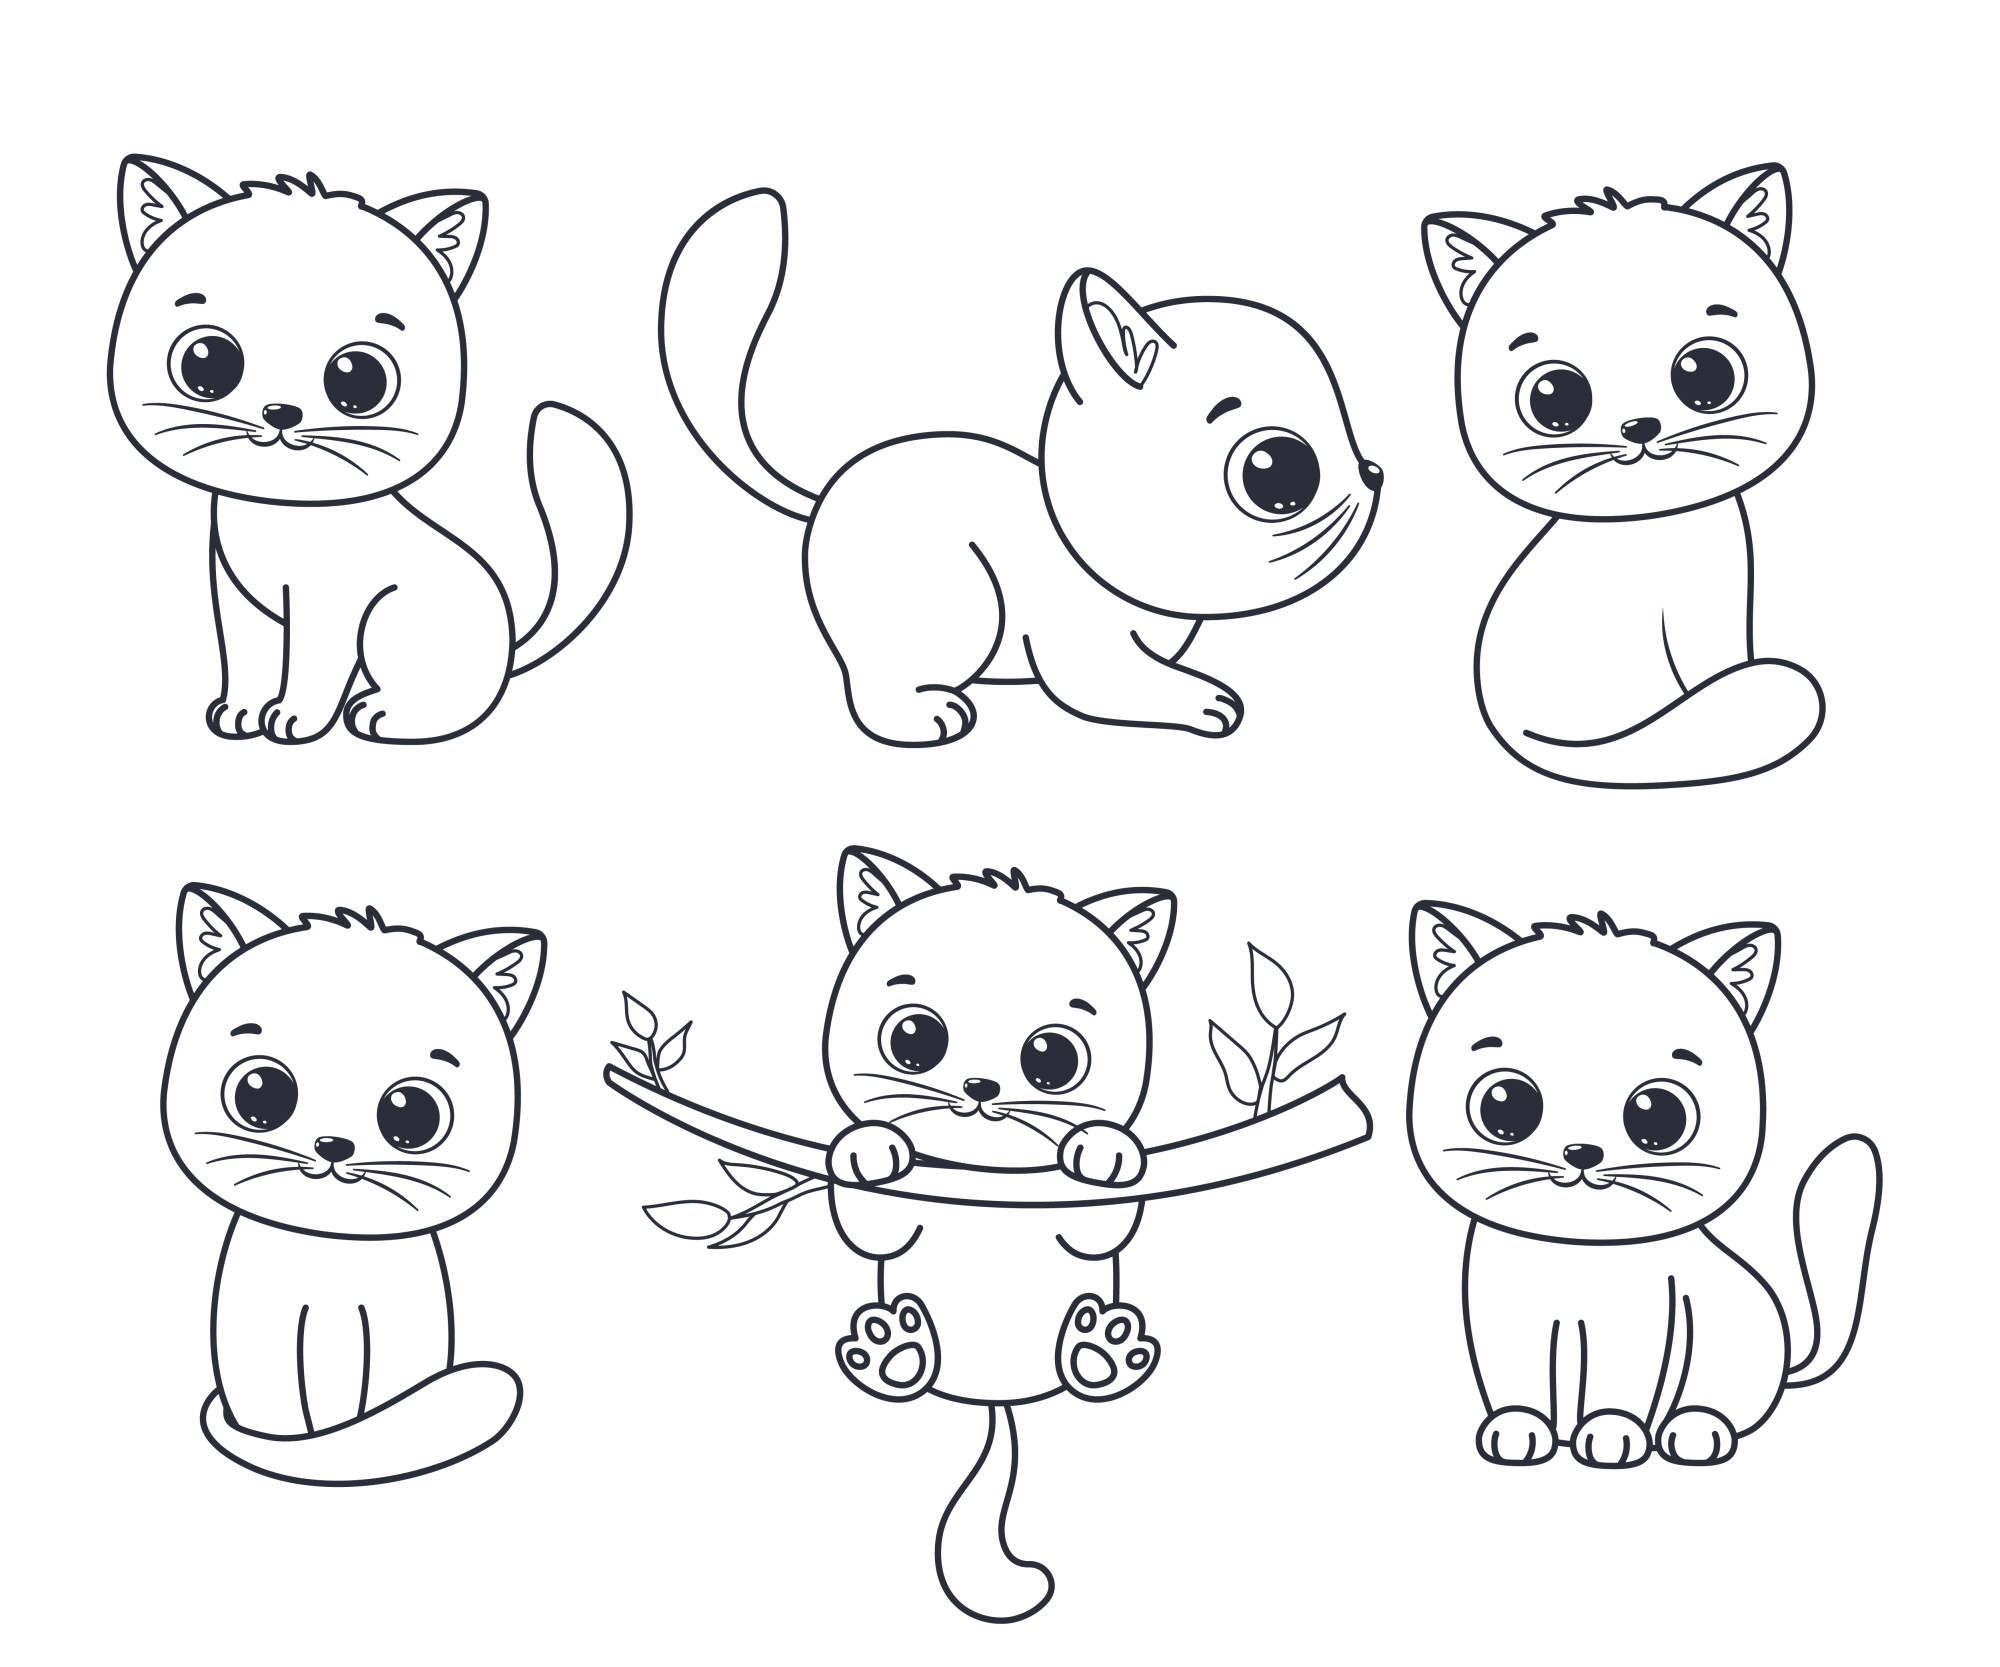 Раскраска для детей: веселые котята